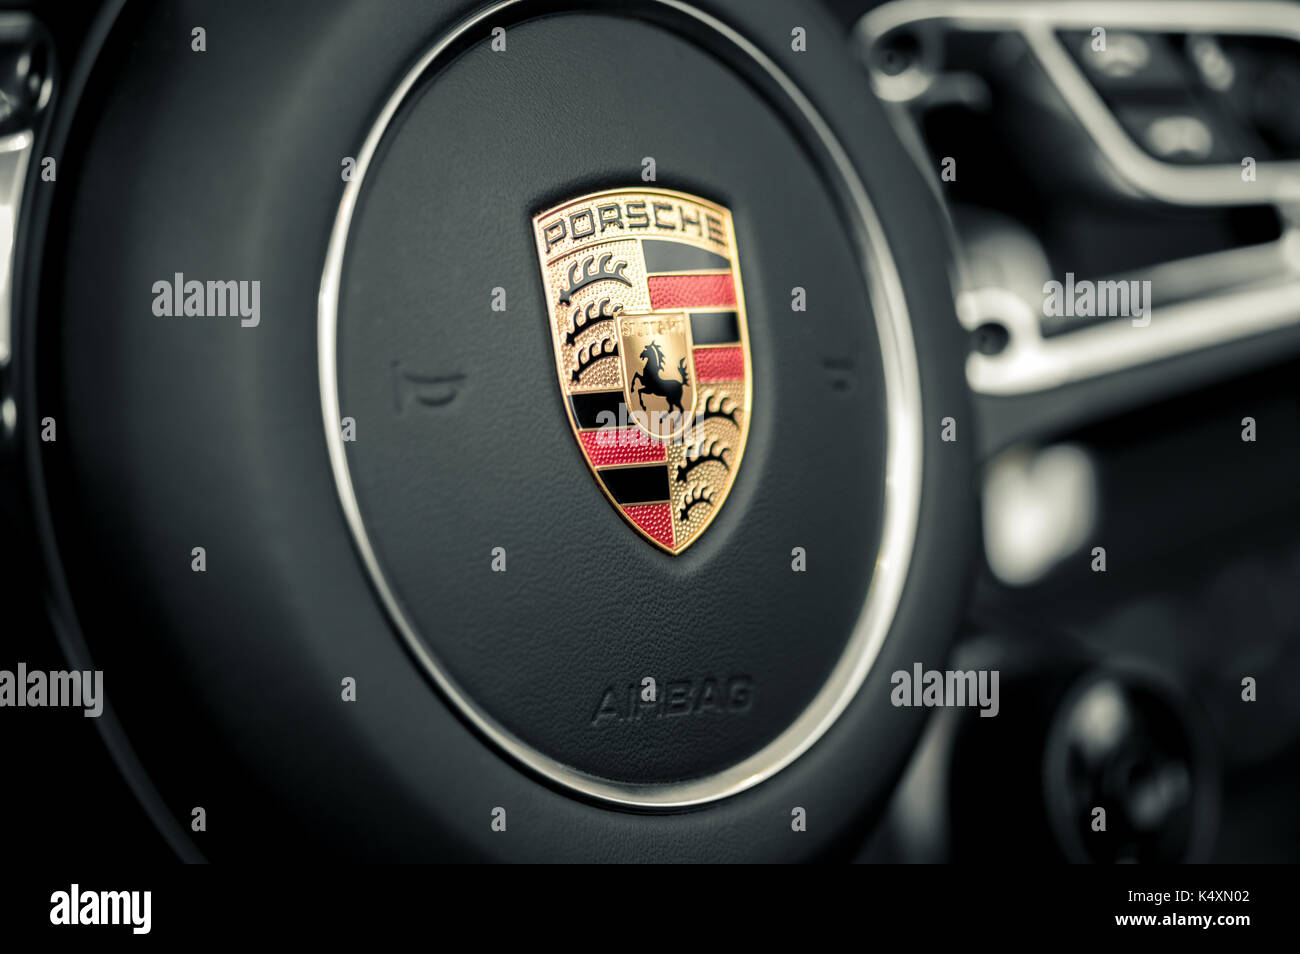 WROCLAW, Polen - 19. AUGUST 2017: Emblem von Porsche am Lenkrad. Porsche  ist ein deutscher Automobilhersteller, spezialisiert auf High performanc  Stockfotografie - Alamy